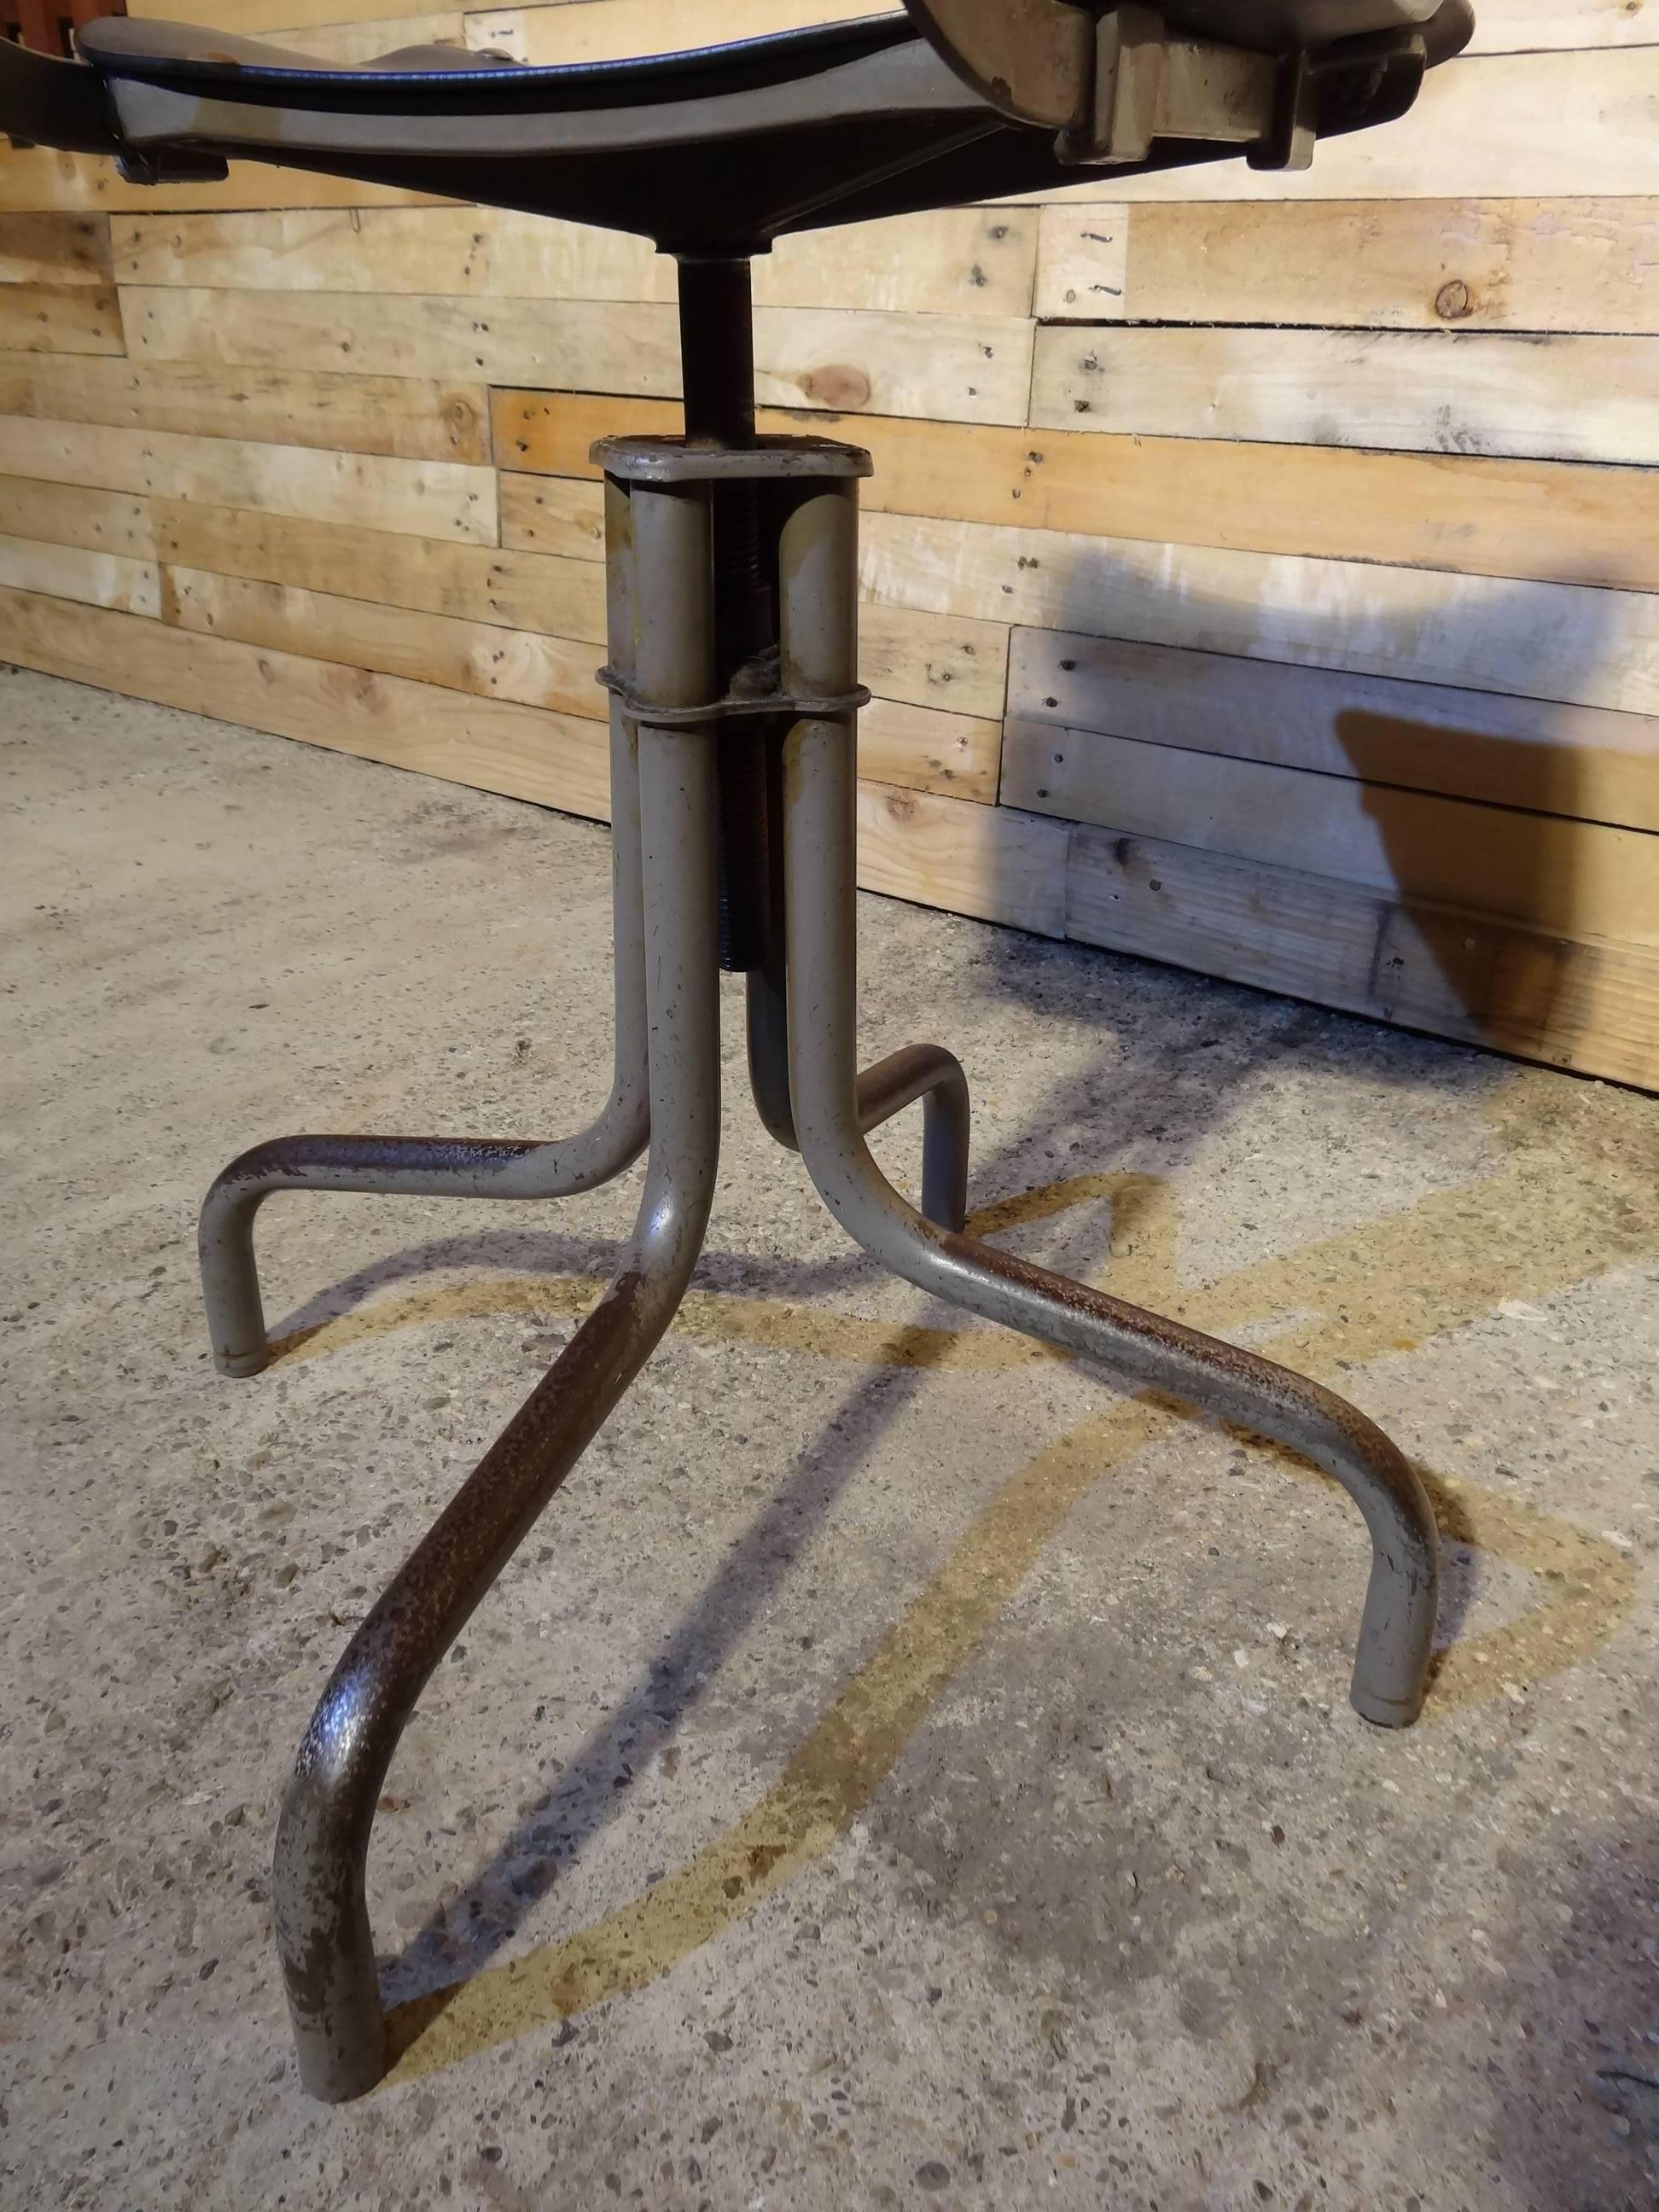 Industriel Tan-Sad Chair Co. 1930s Industrial Metal Height Adjustable Sewing Stool (Tabouret de couture en métal réglable en hauteur) en vente